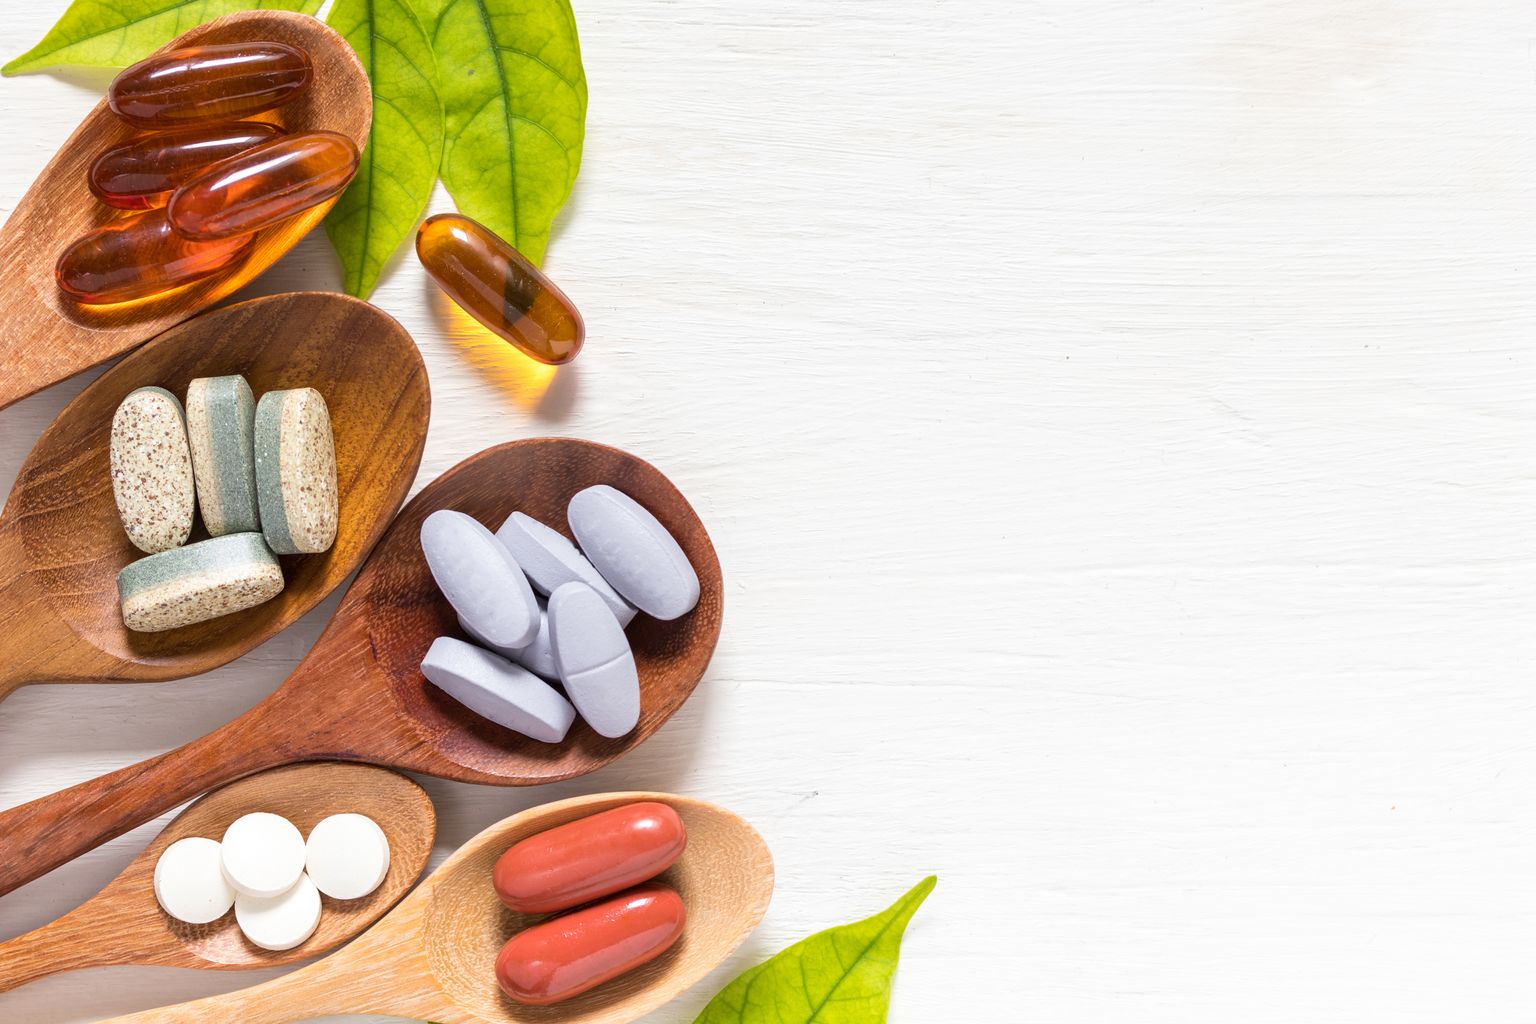 Varietà di pillole di vitamina in cucchiai di legno su sfondo bianco con foglia verde, prodotto complementare e medico, superficie piana profana